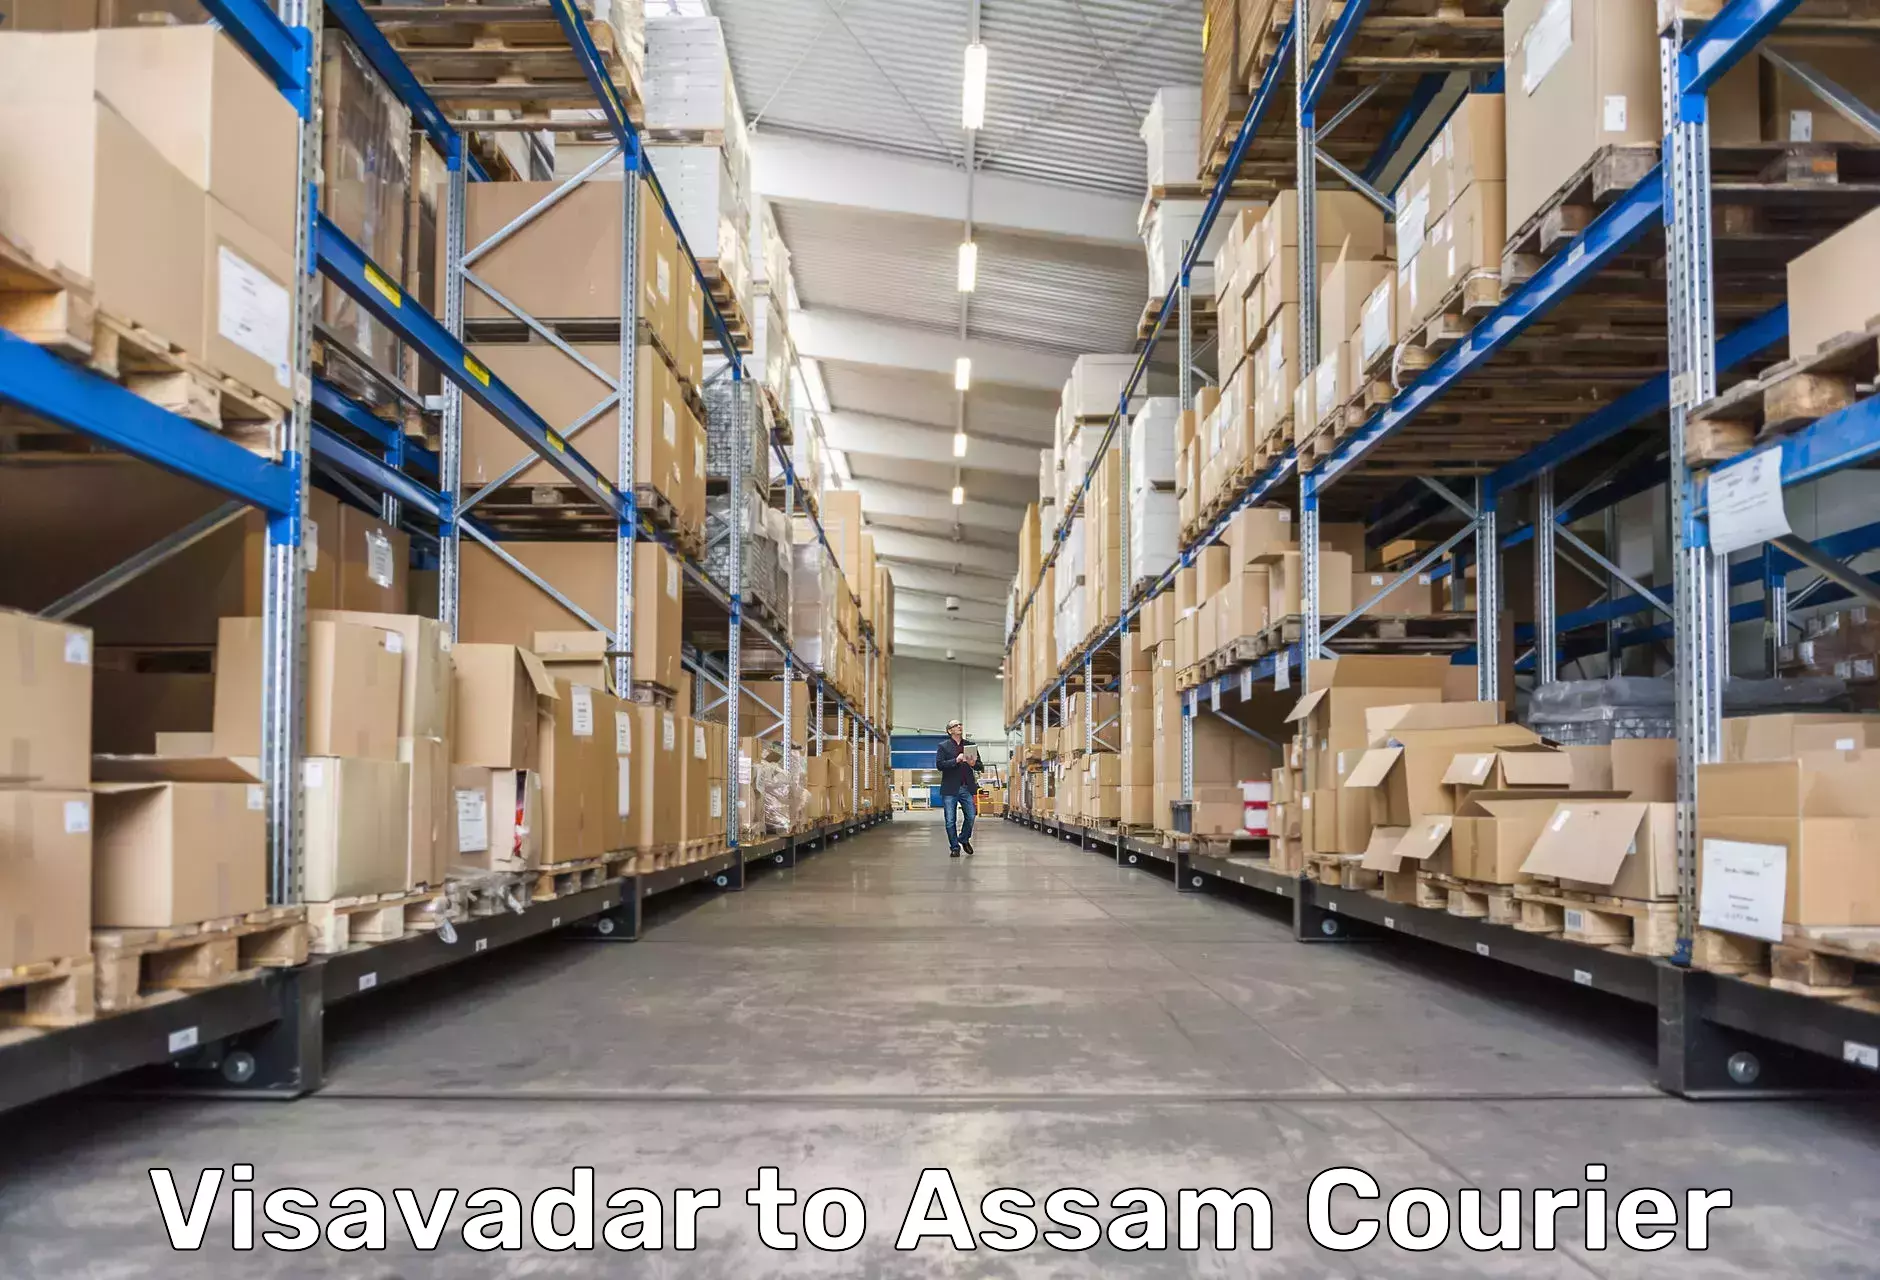 Urban courier service Visavadar to Badarpur Karimganj